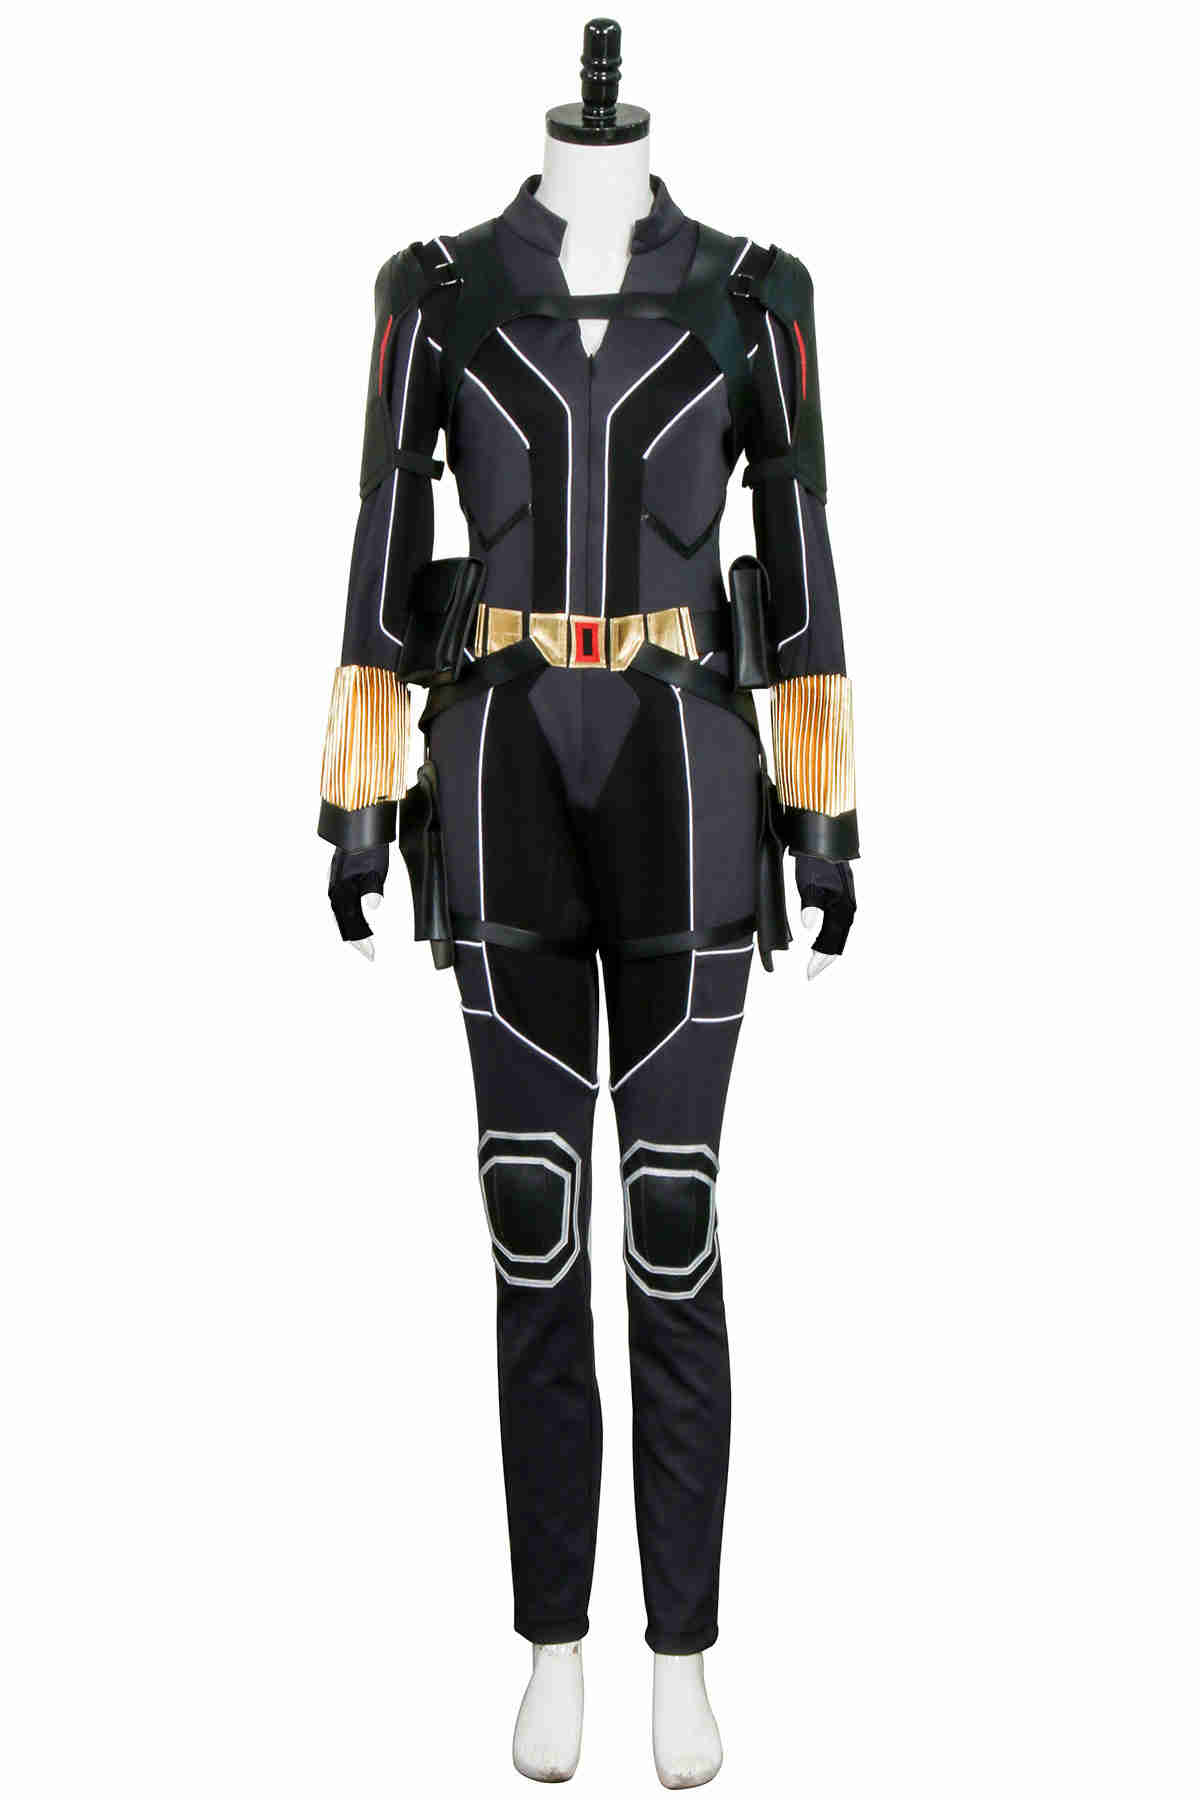 2020 Film Black Widow Outfit Natasha Romanoff Jumpsuit Superheroe cosplay costume-Takerlama